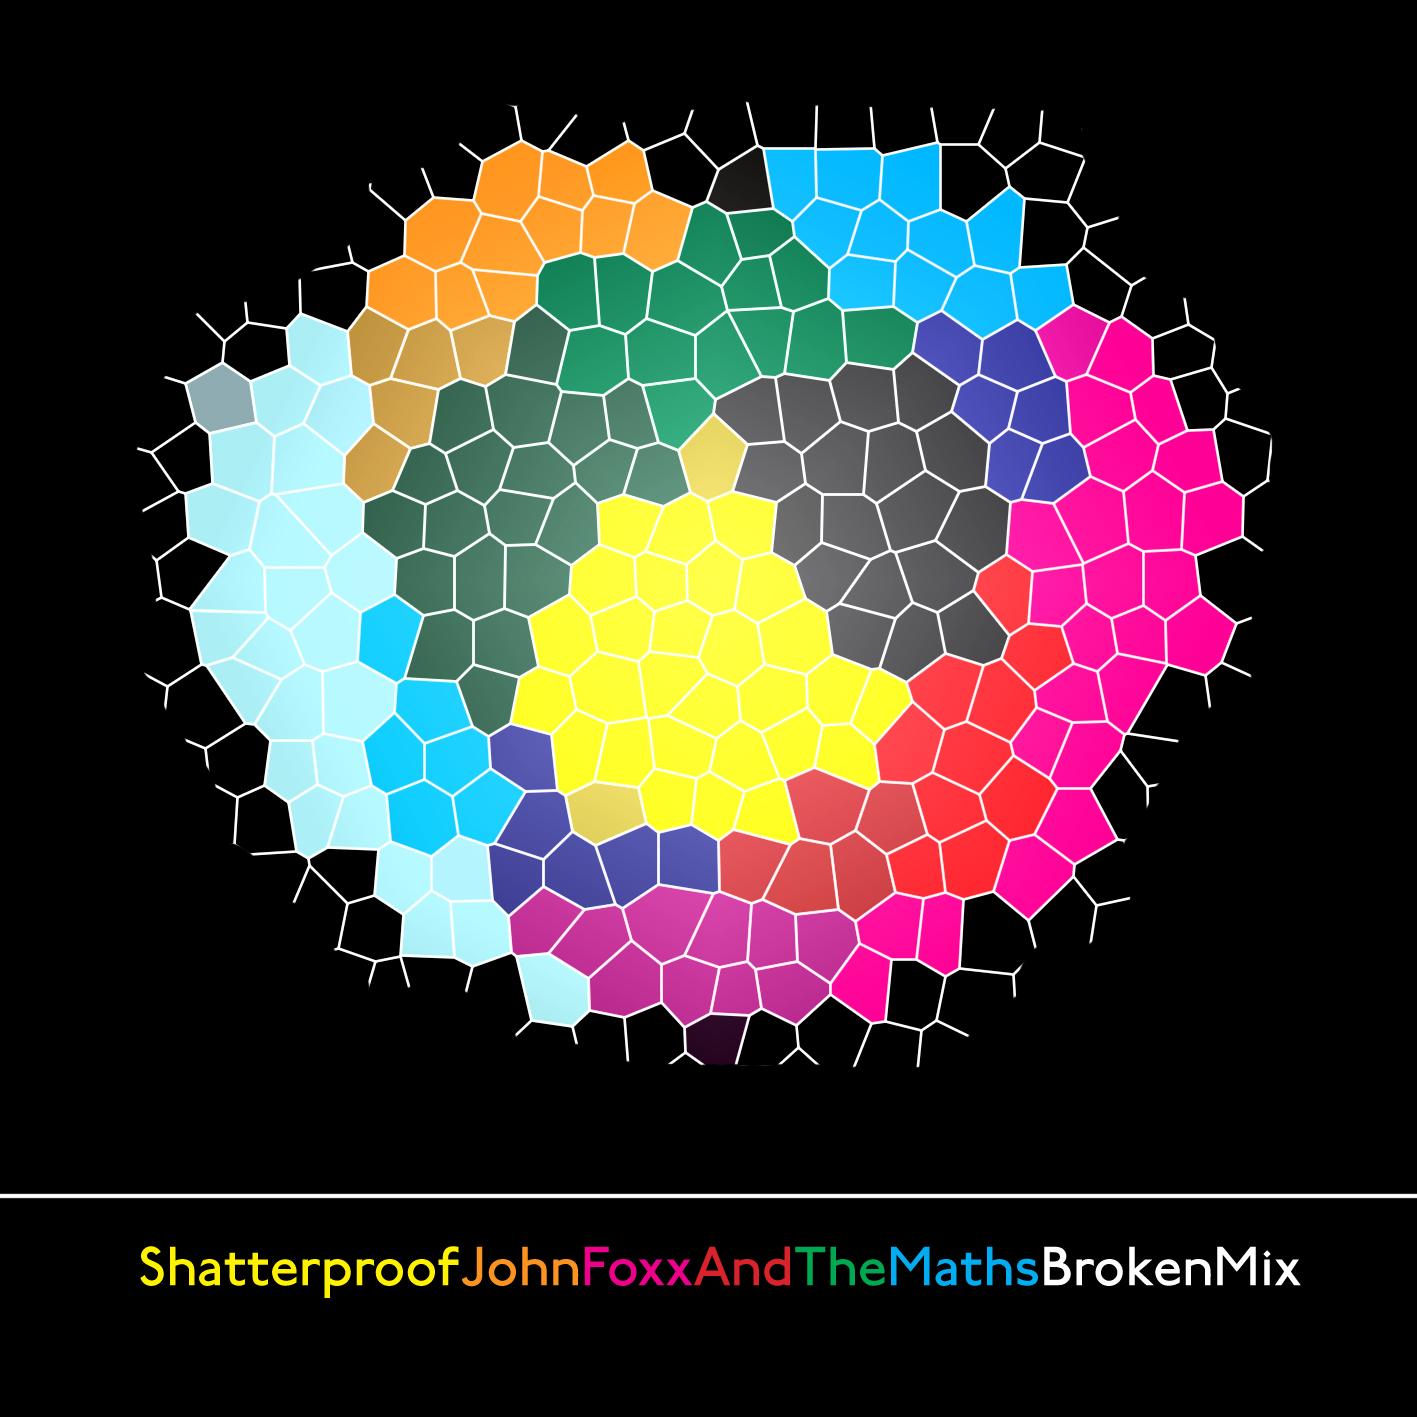 John Foxx + Maths_Shatterproof_Broken Remix by Salvador Dalek